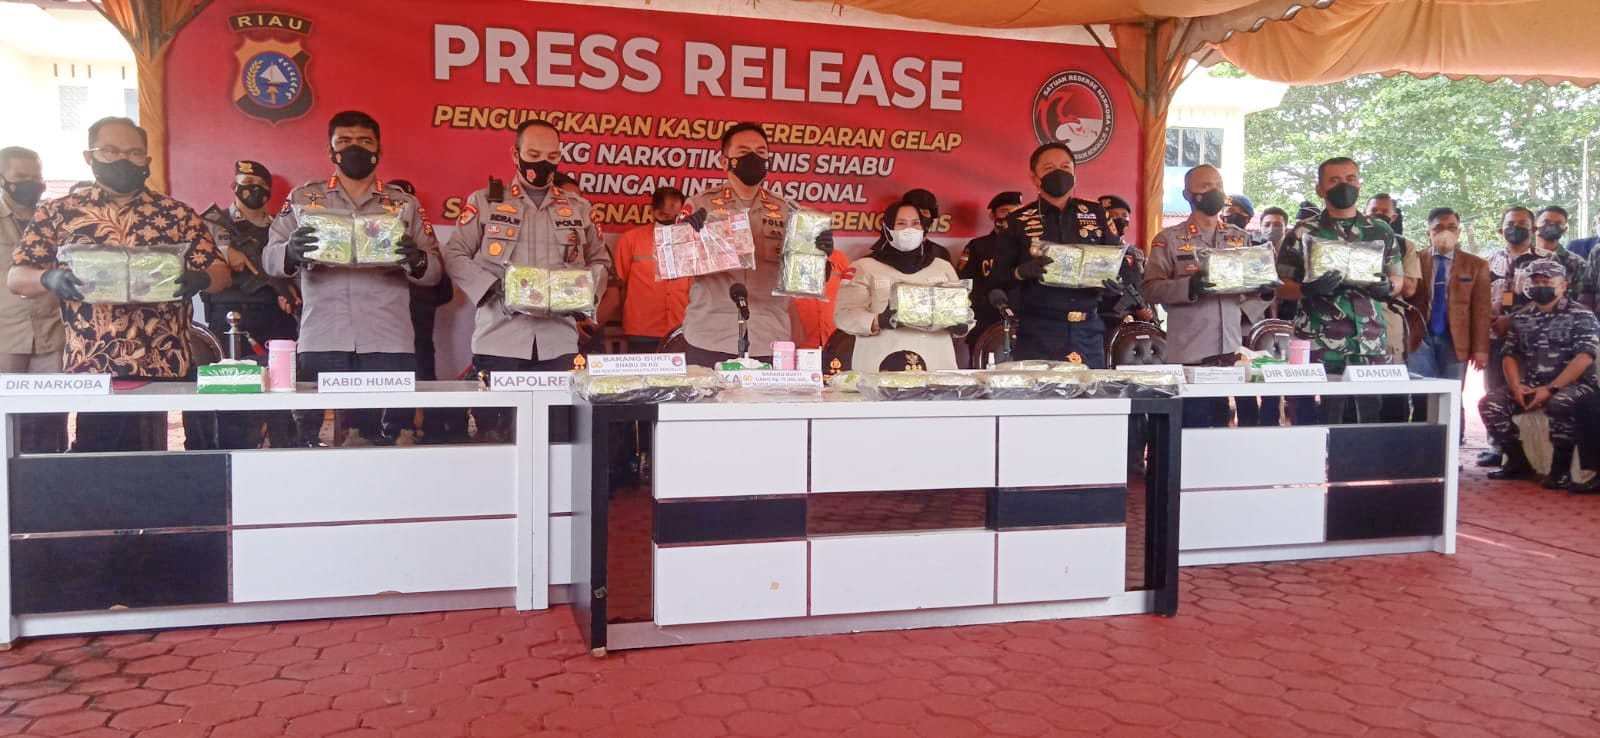 Kapolda Riau Hadiri Press Release Penangkapan Sabu di Bengkalis